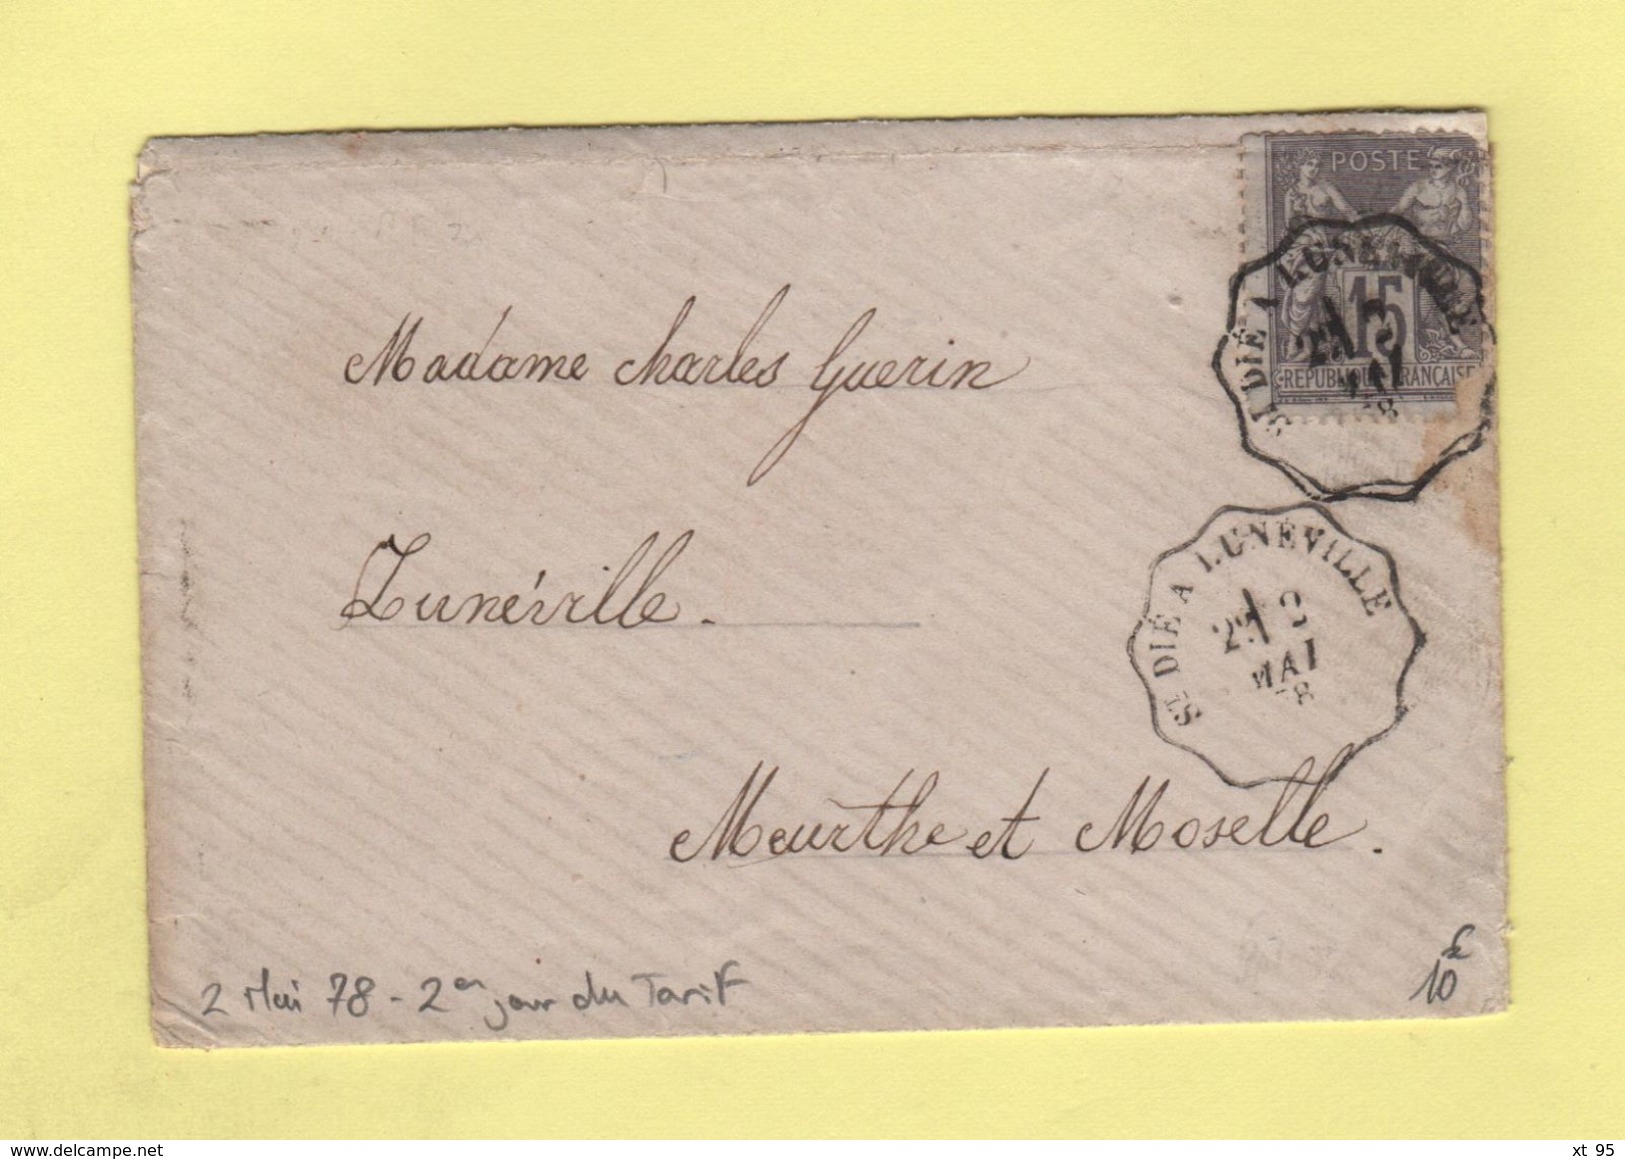 Convoyeur - St Die A Luneville - 2 Mai 1878 - 2eme Jour Du Tarif De La Lettre à 15c - Railway Post